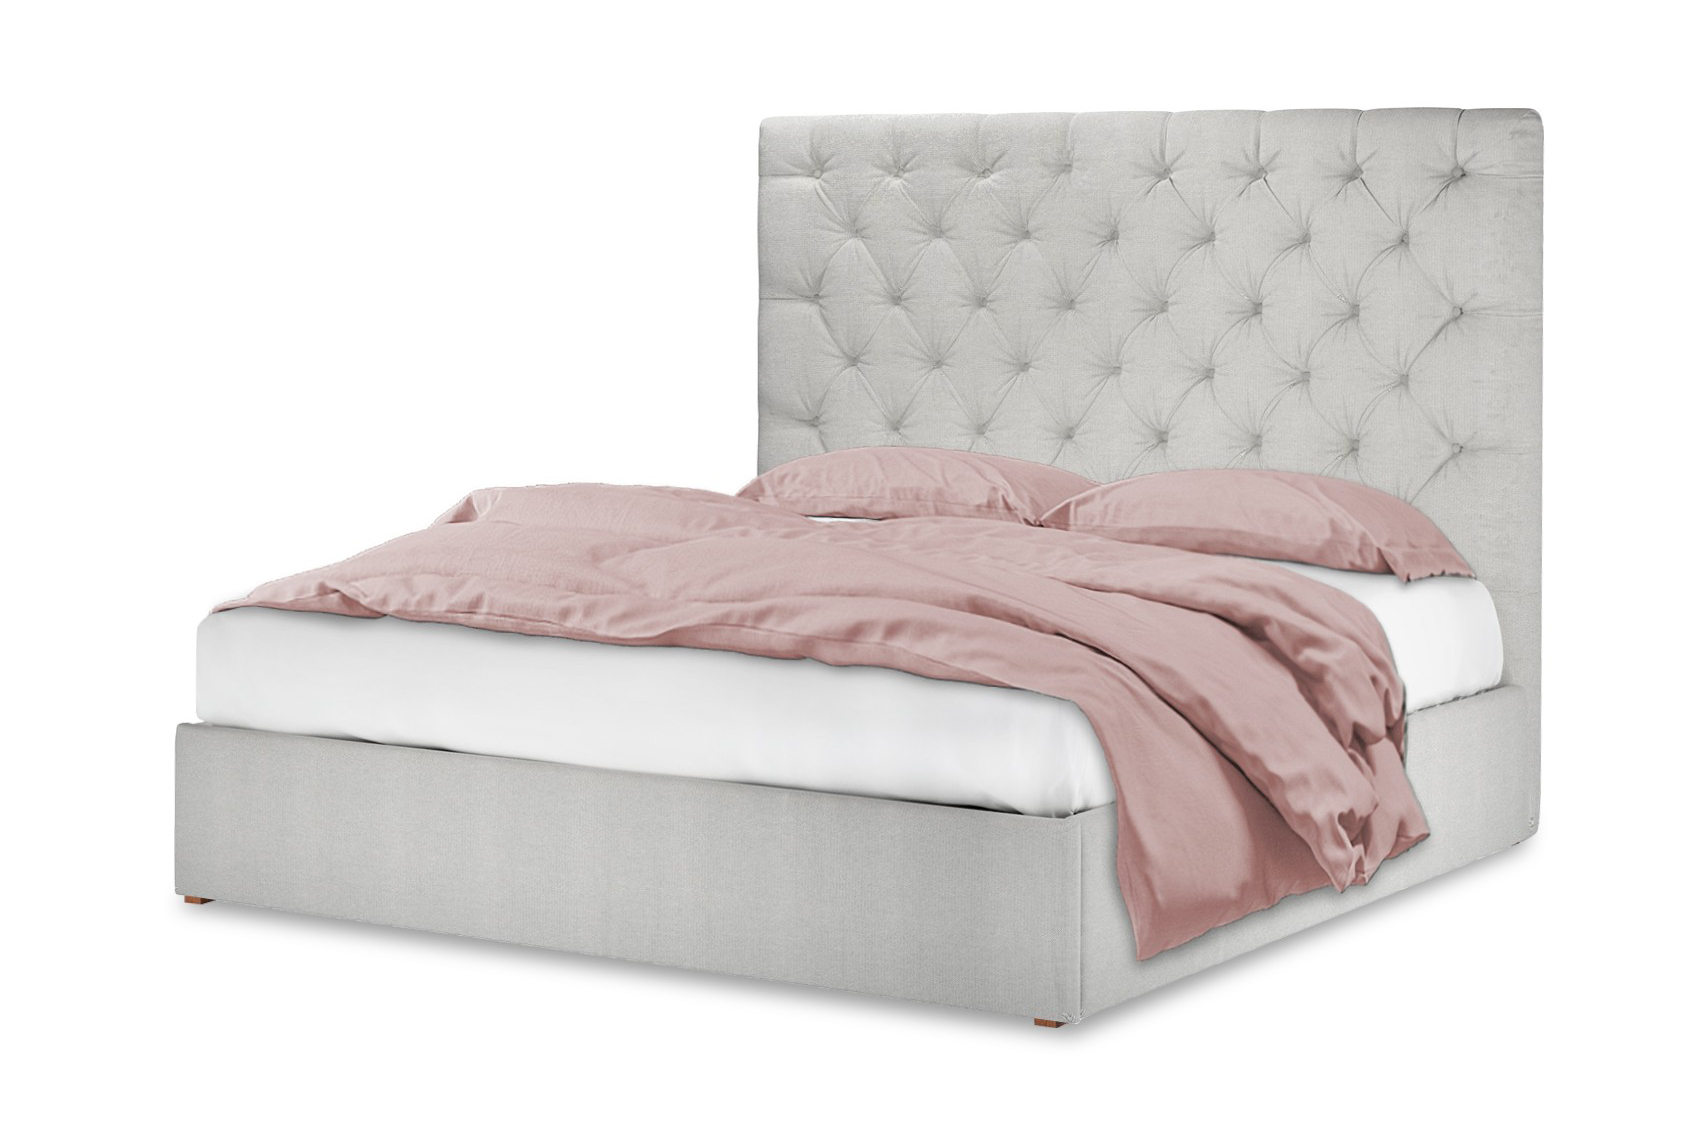 Интерьерная кровать Сиена кровать соня вариант 4 с защитой по центру выкатные ящики приобретаются отдельно лаванда